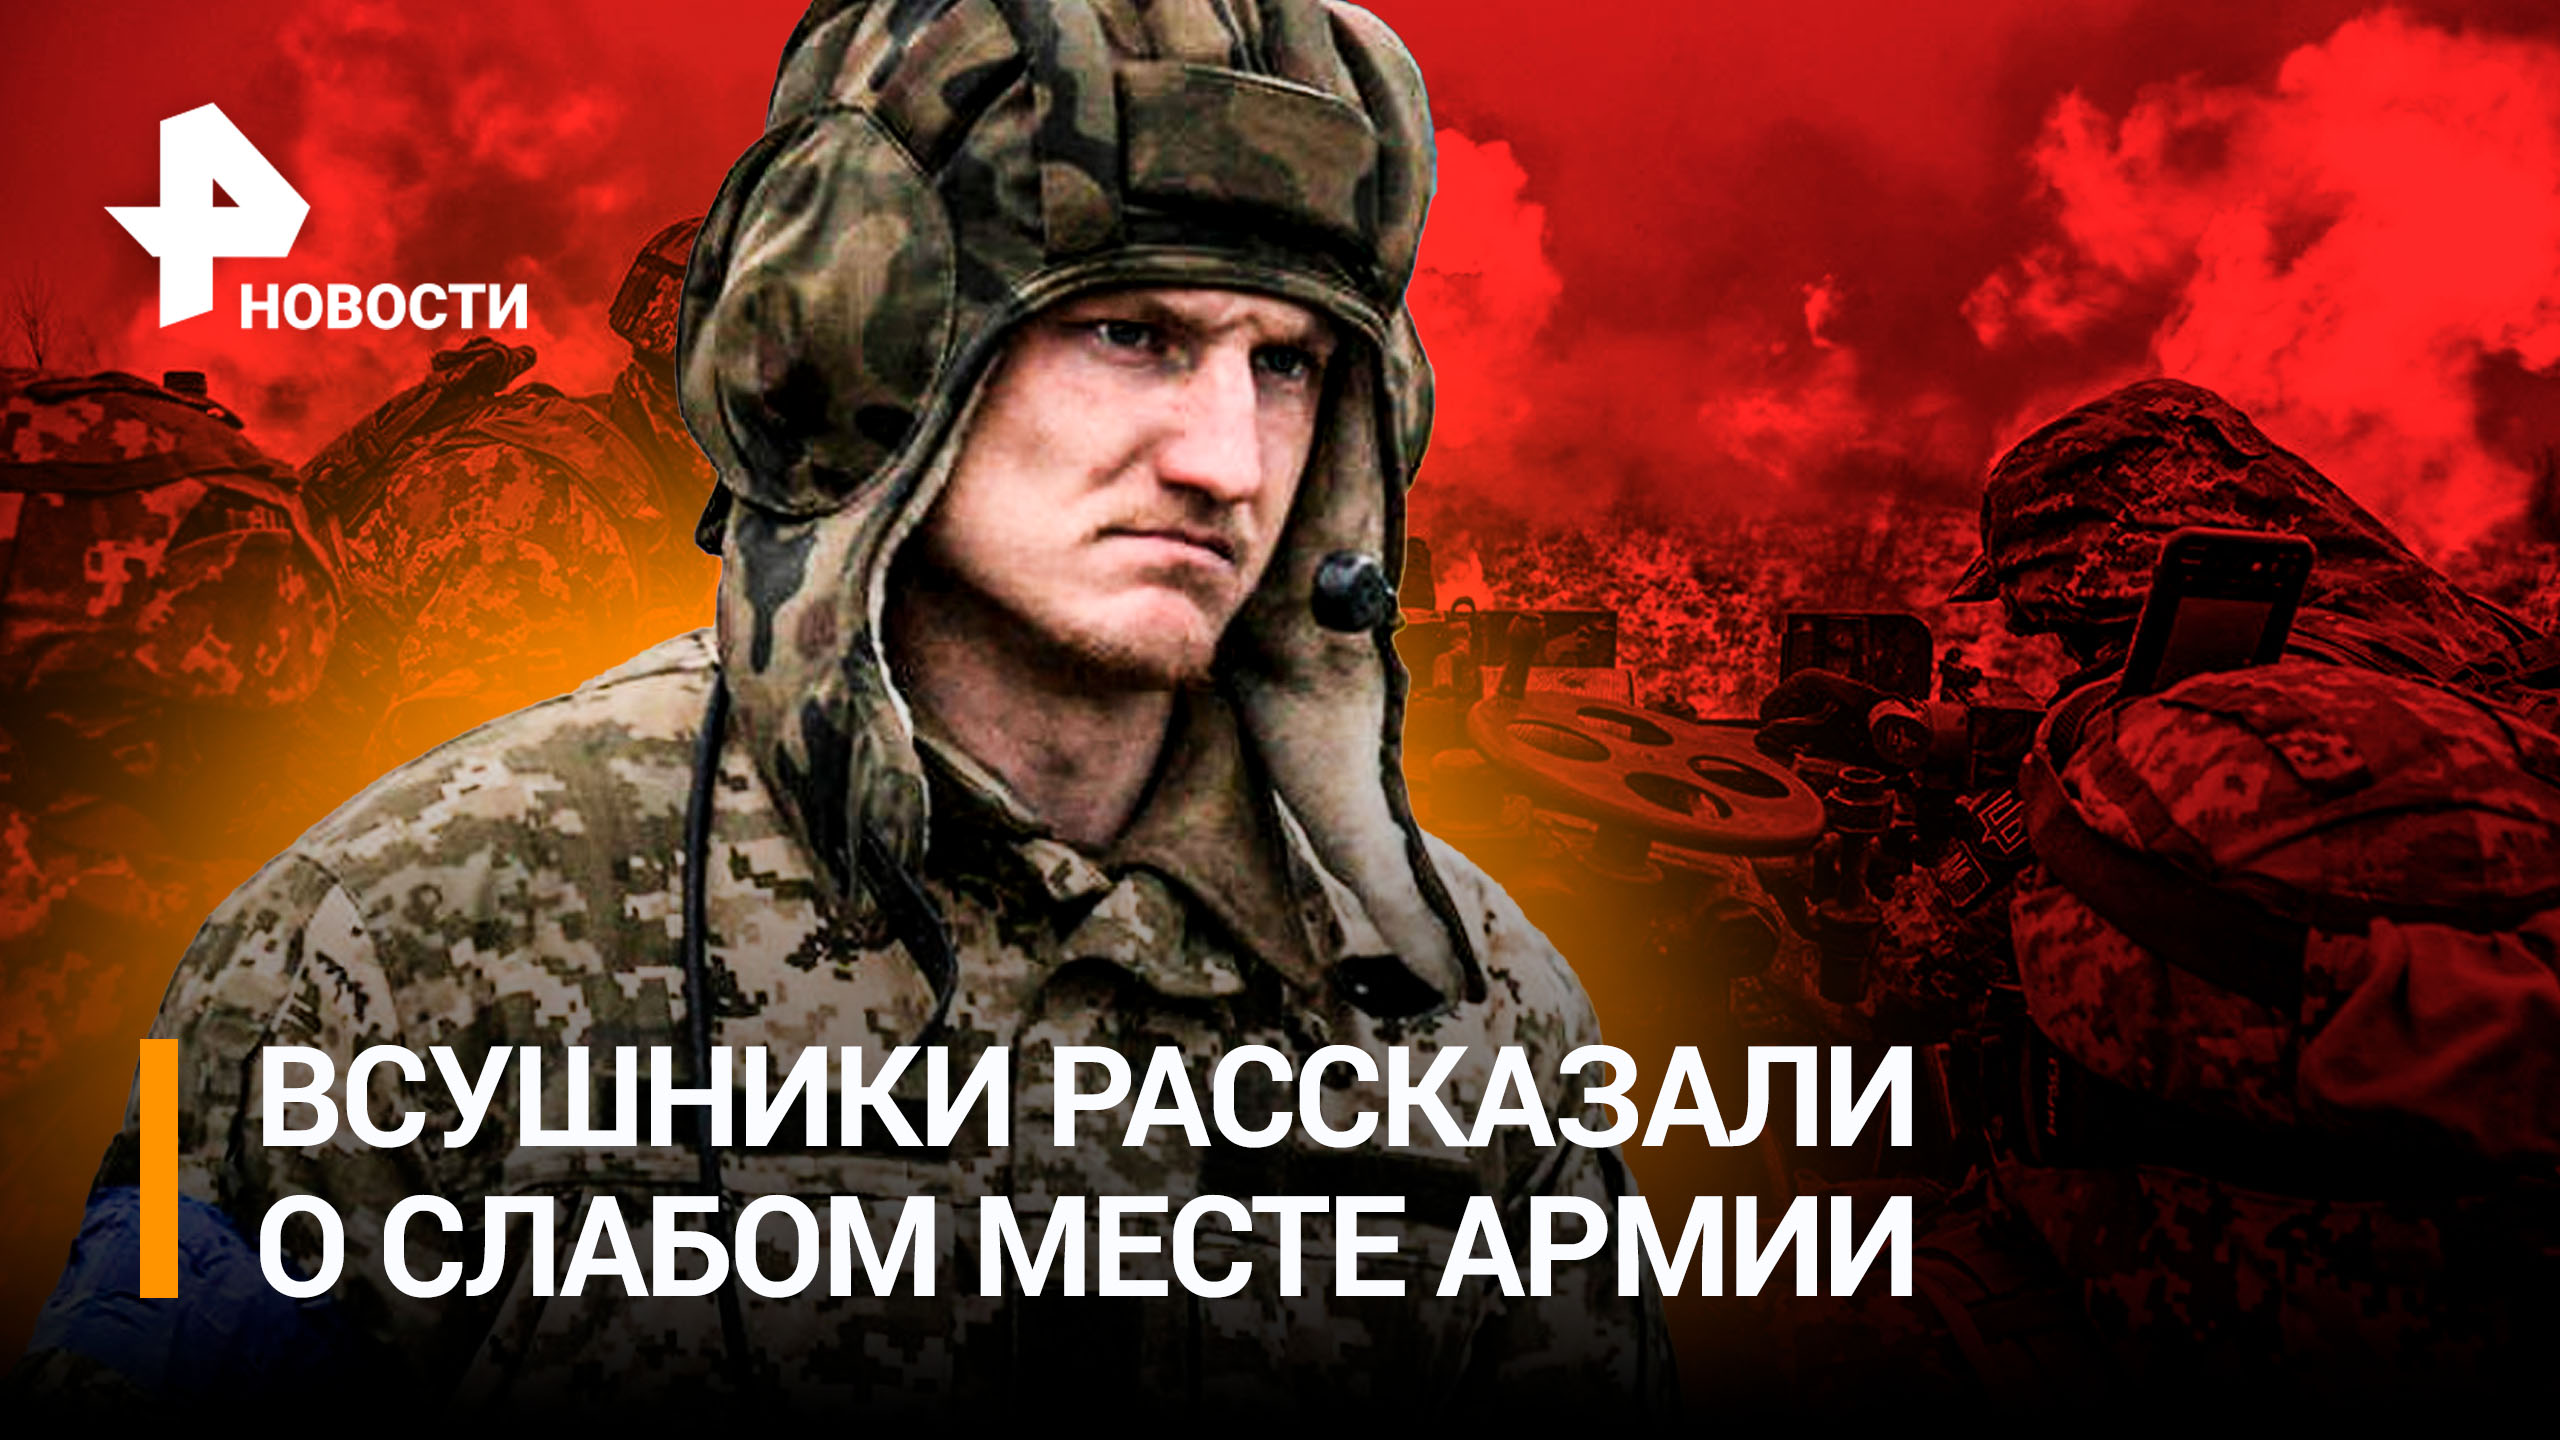 Несколько тысяч "двухсотых": снаряды сбросили на ВСУшников в ДНР. Данилов угрожает украинцам